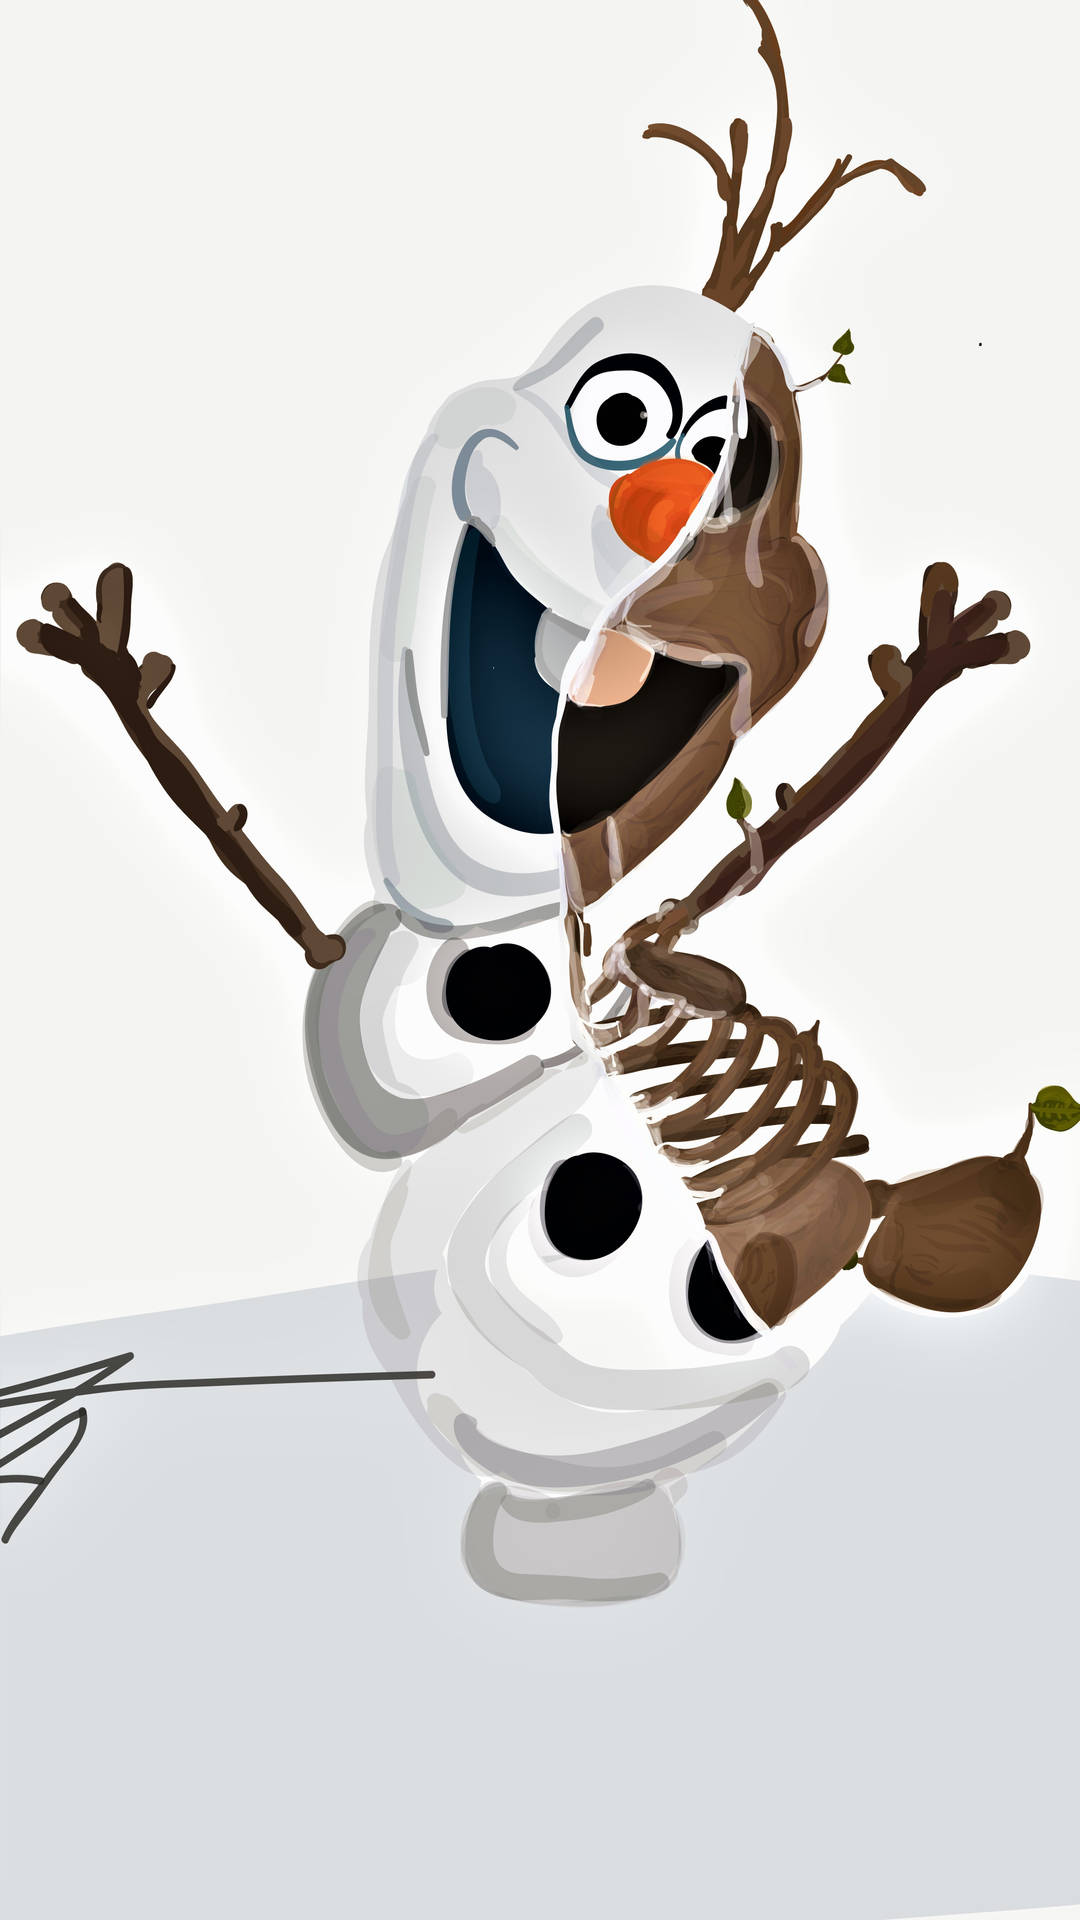 Metadeda Arte Esqueleto Do Olaf. Papel de Parede